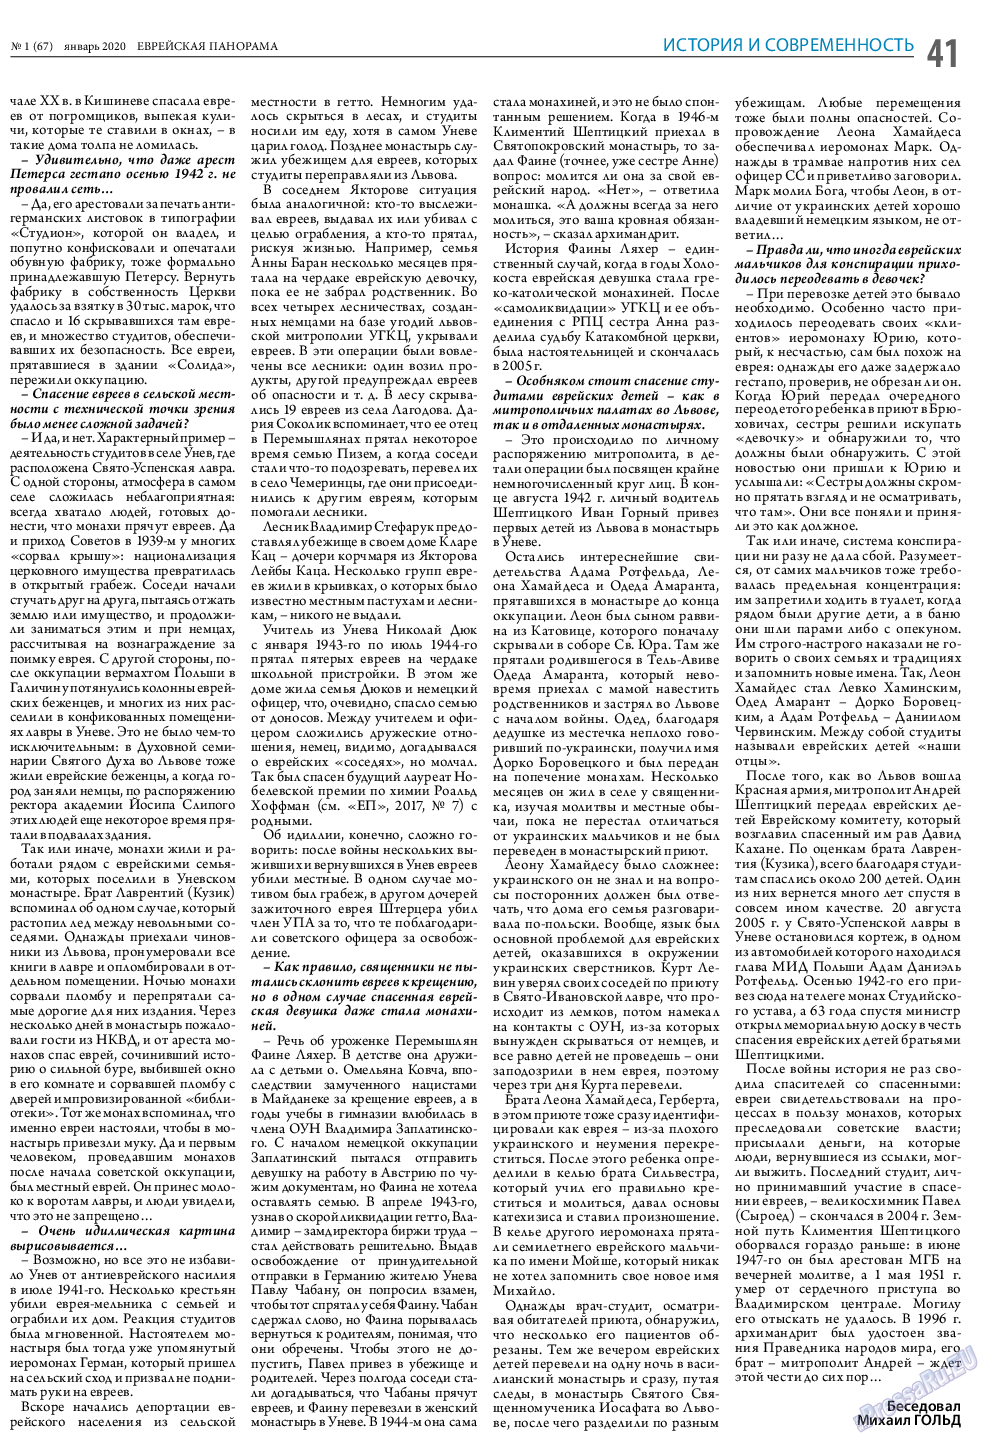 Еврейская панорама (газета). 2020 год, номер 1, стр. 41